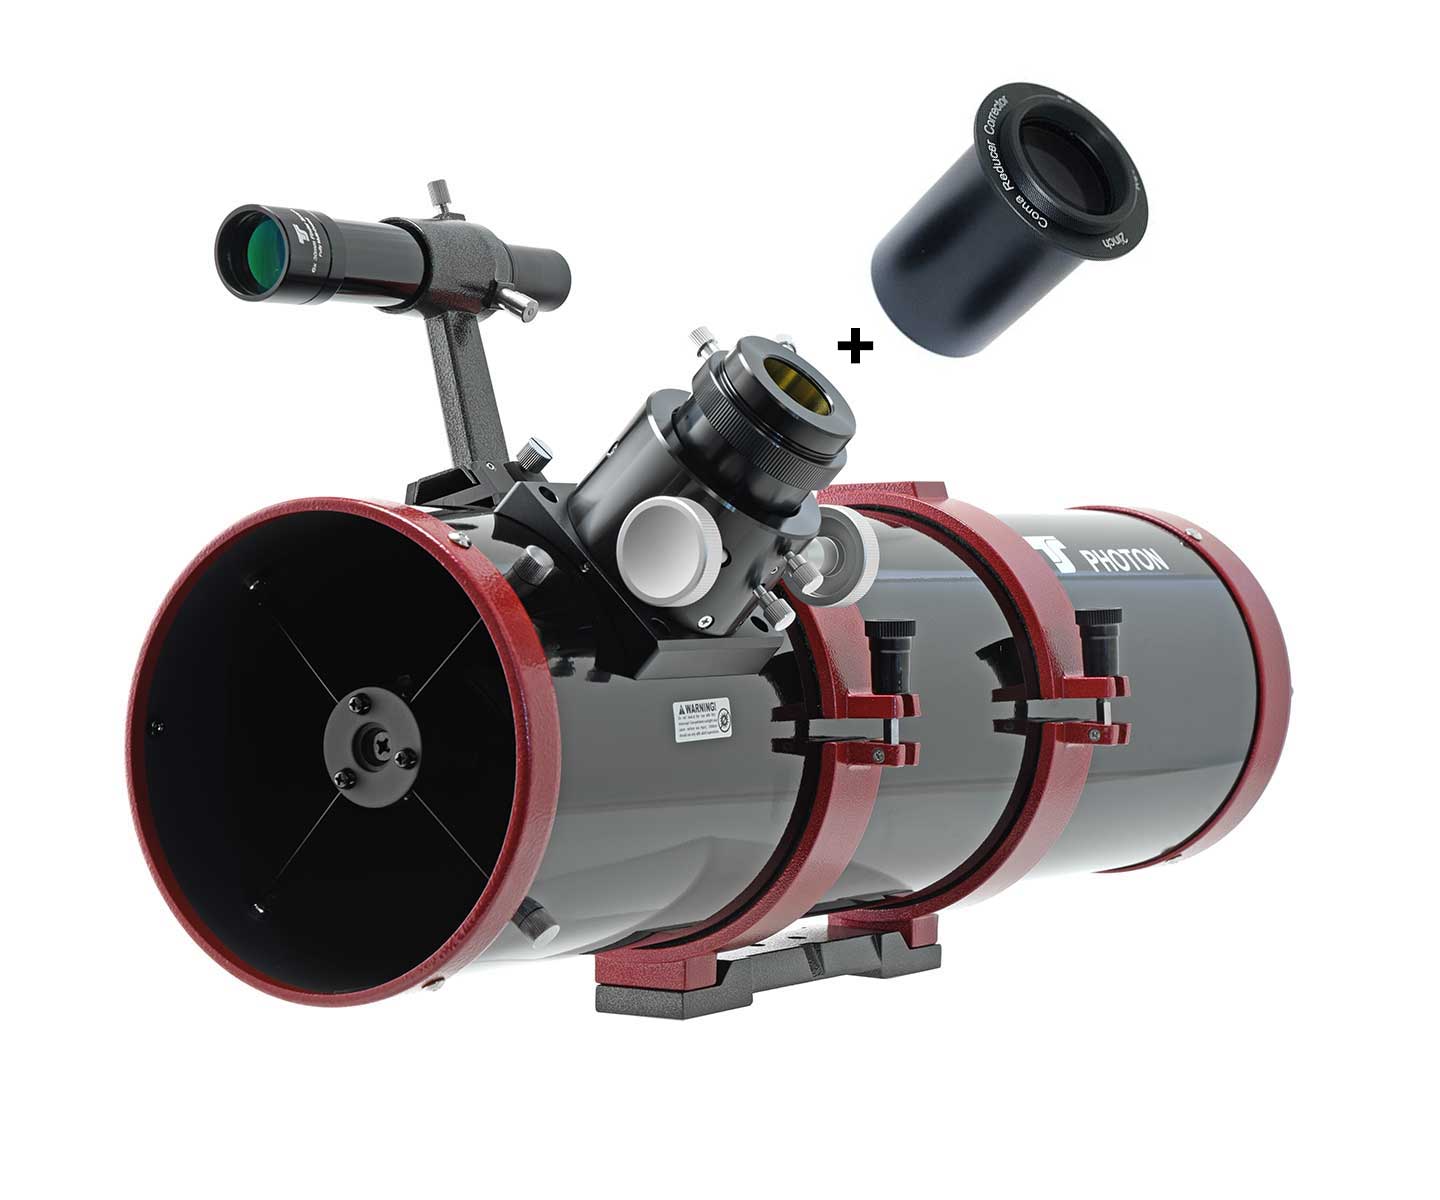   Tubo ottico GSO 150mm F5 Newton Ota con focheggiatore Crayford da 50.8mm completo di correttore di coma Maxfield   